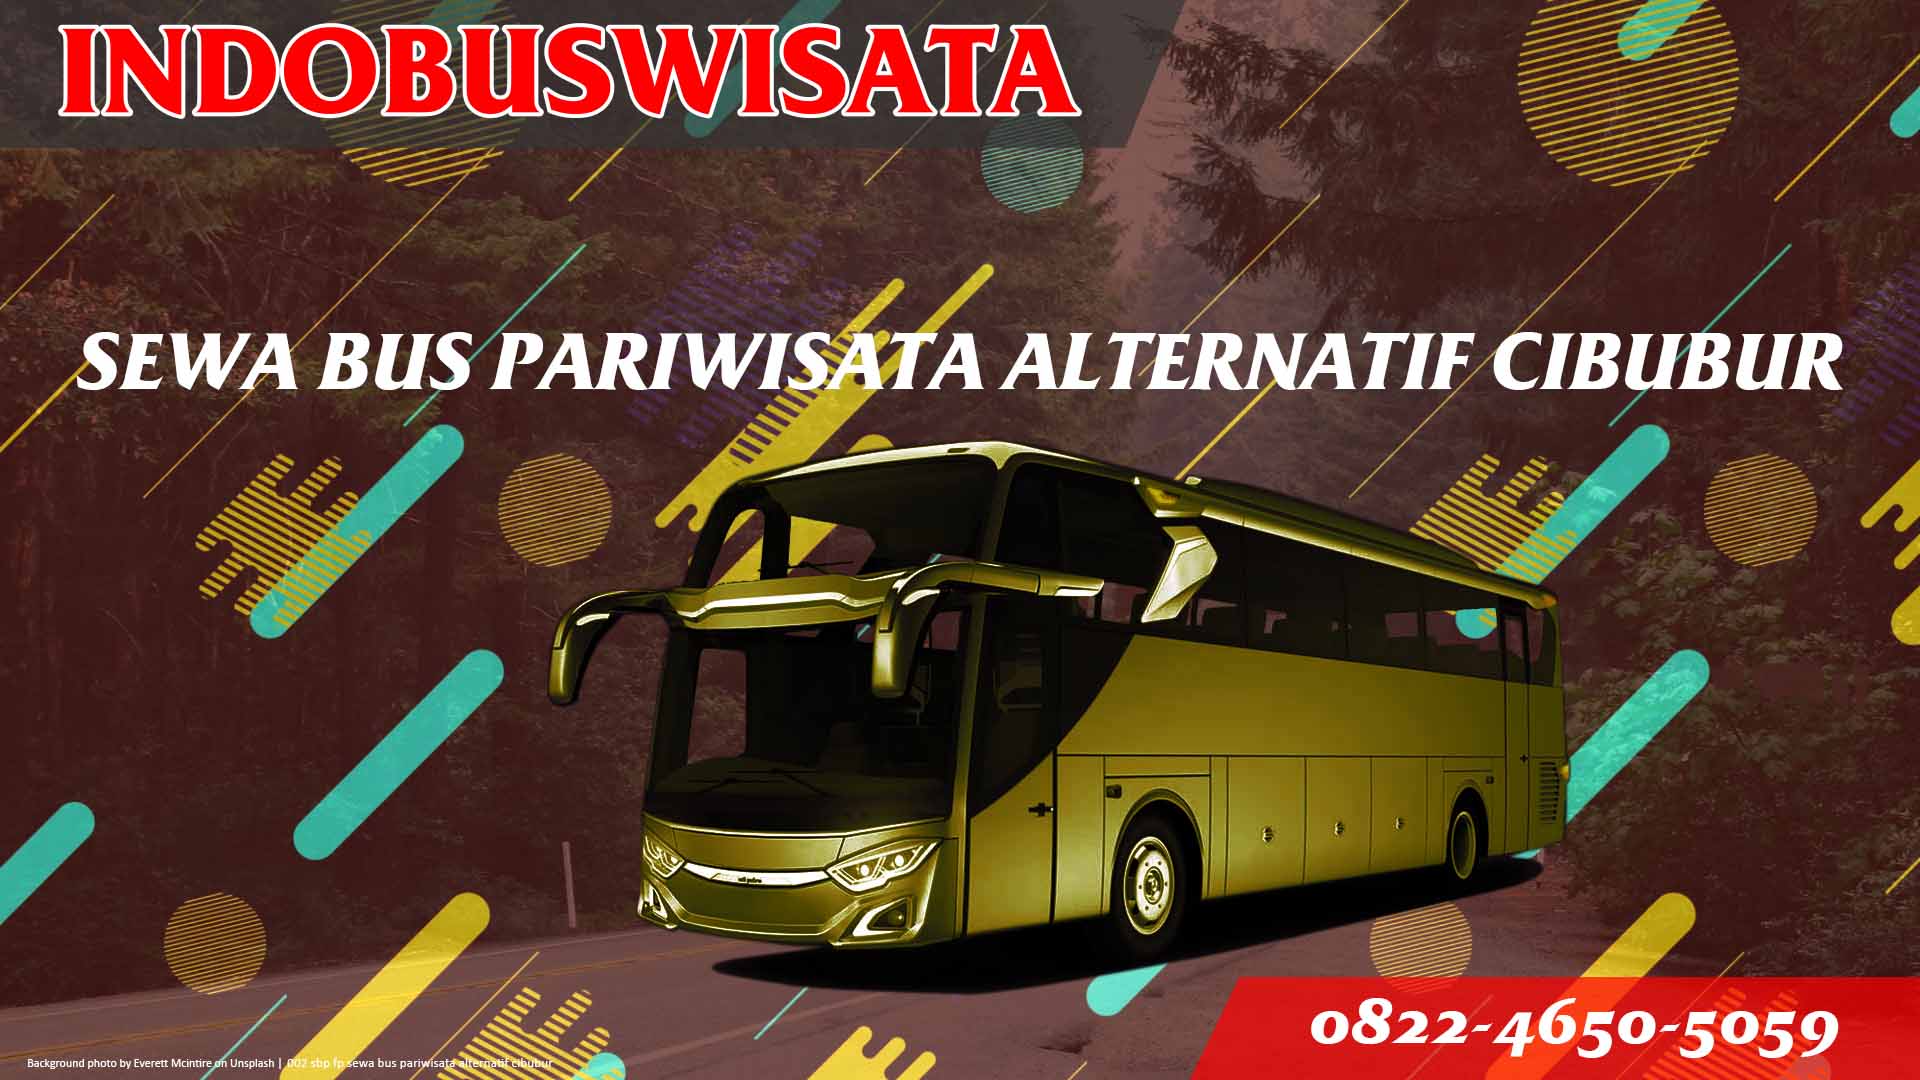 002 Sbp Fp Sewa Bus Pariwisata Alternatif Cibubur Indobuswisata